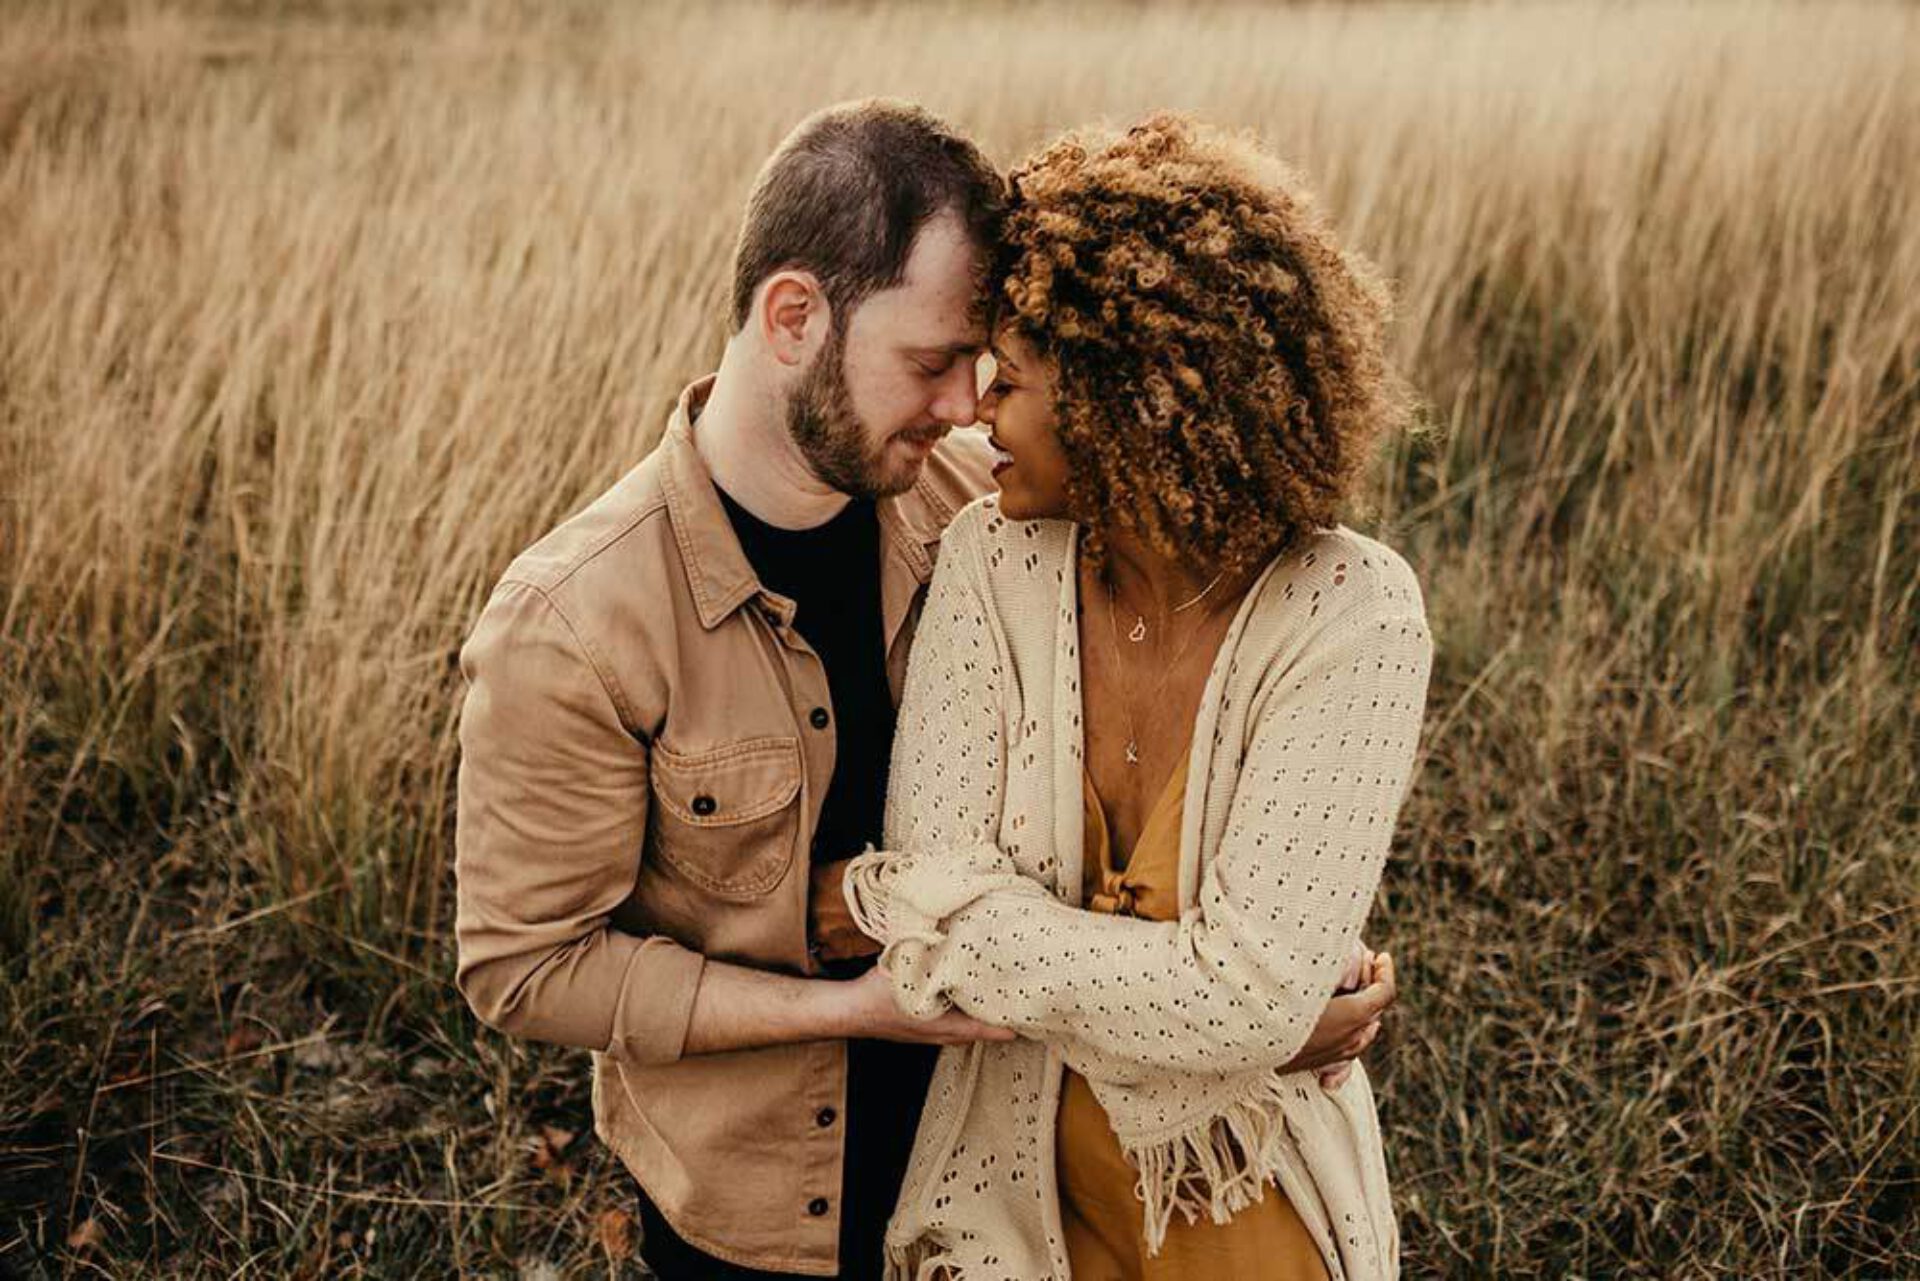 Mindful vrijen: creëer verbinding door aanraking en intimiteit